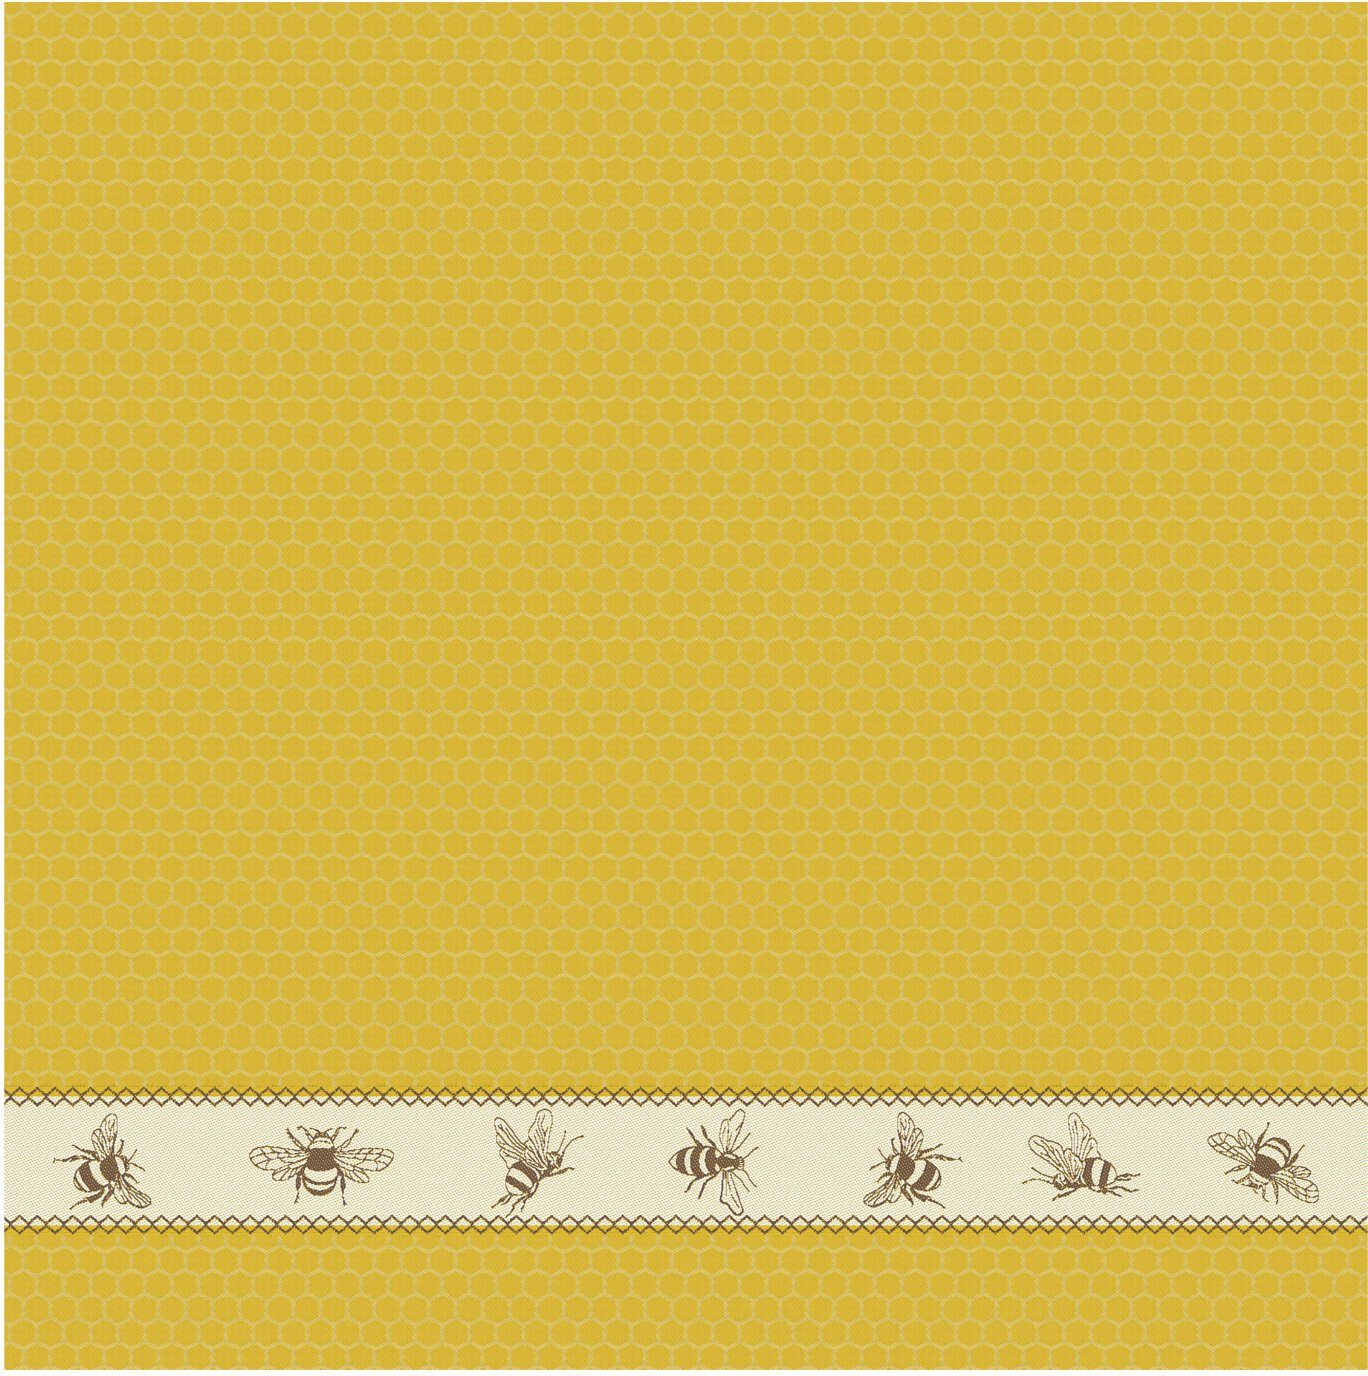 Küchentuch gelb/naturweiß/braun + Bees, (Set, 2x DDDDD aus bestehend Combi-Set: Geschirrtuch 2x 4-tlg., Geschirrtuch)